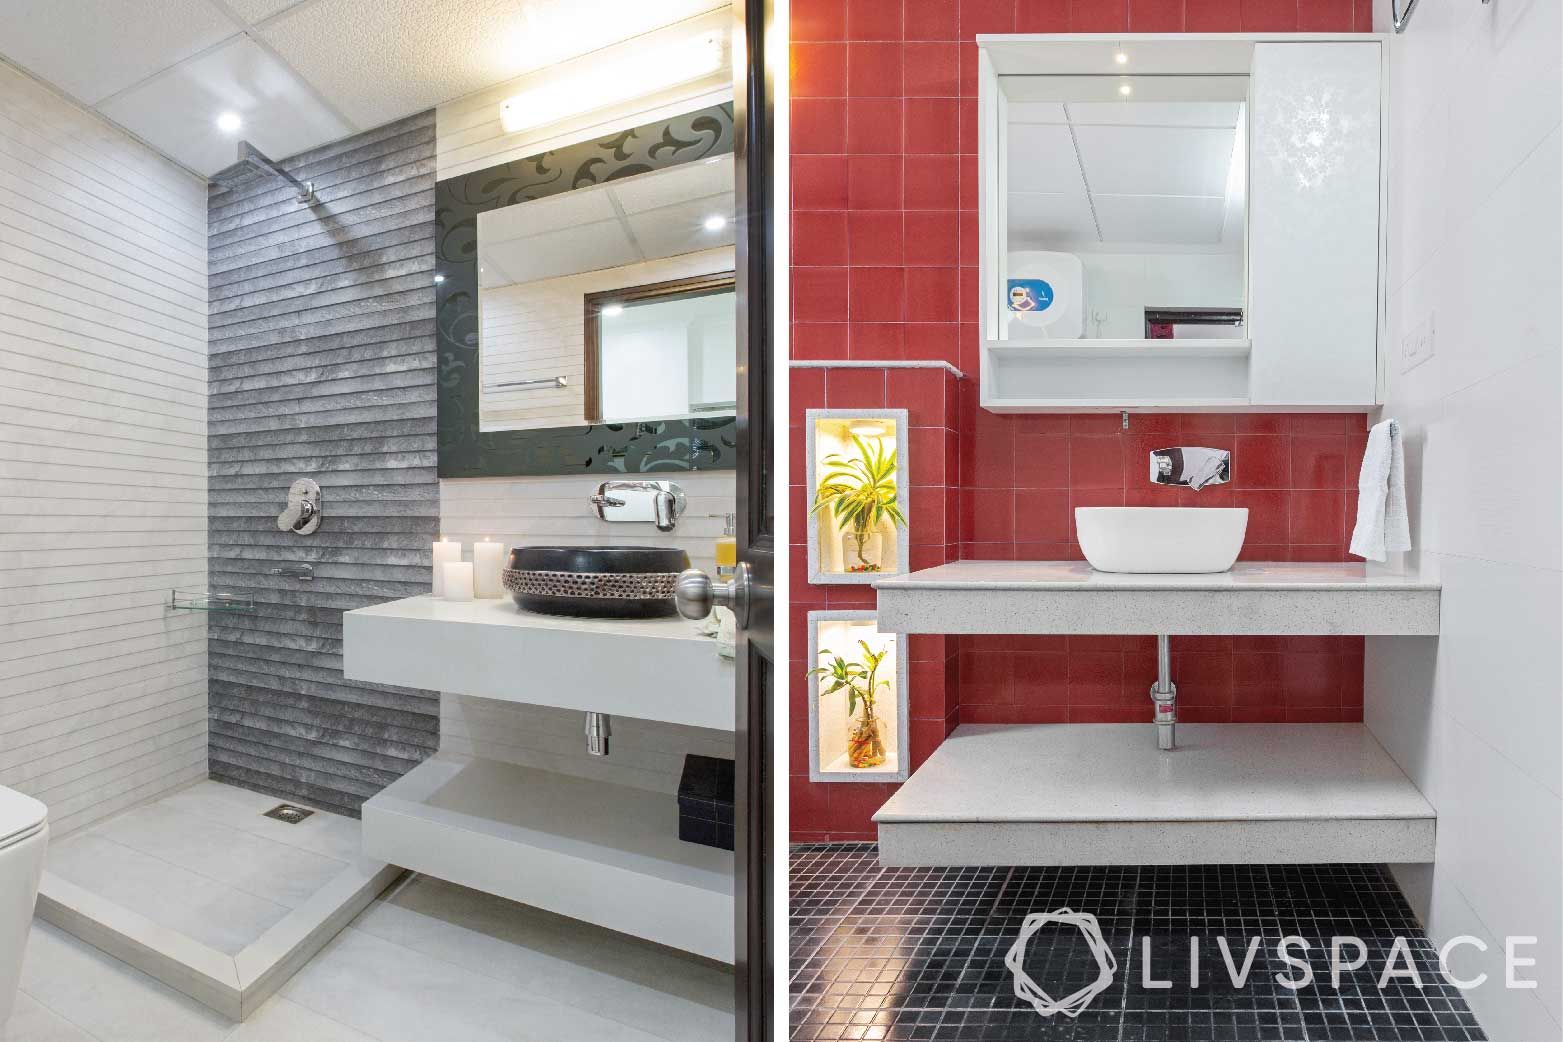 toilet design-tiles-ceramic tiles-red bathroom-sink-shower designs
